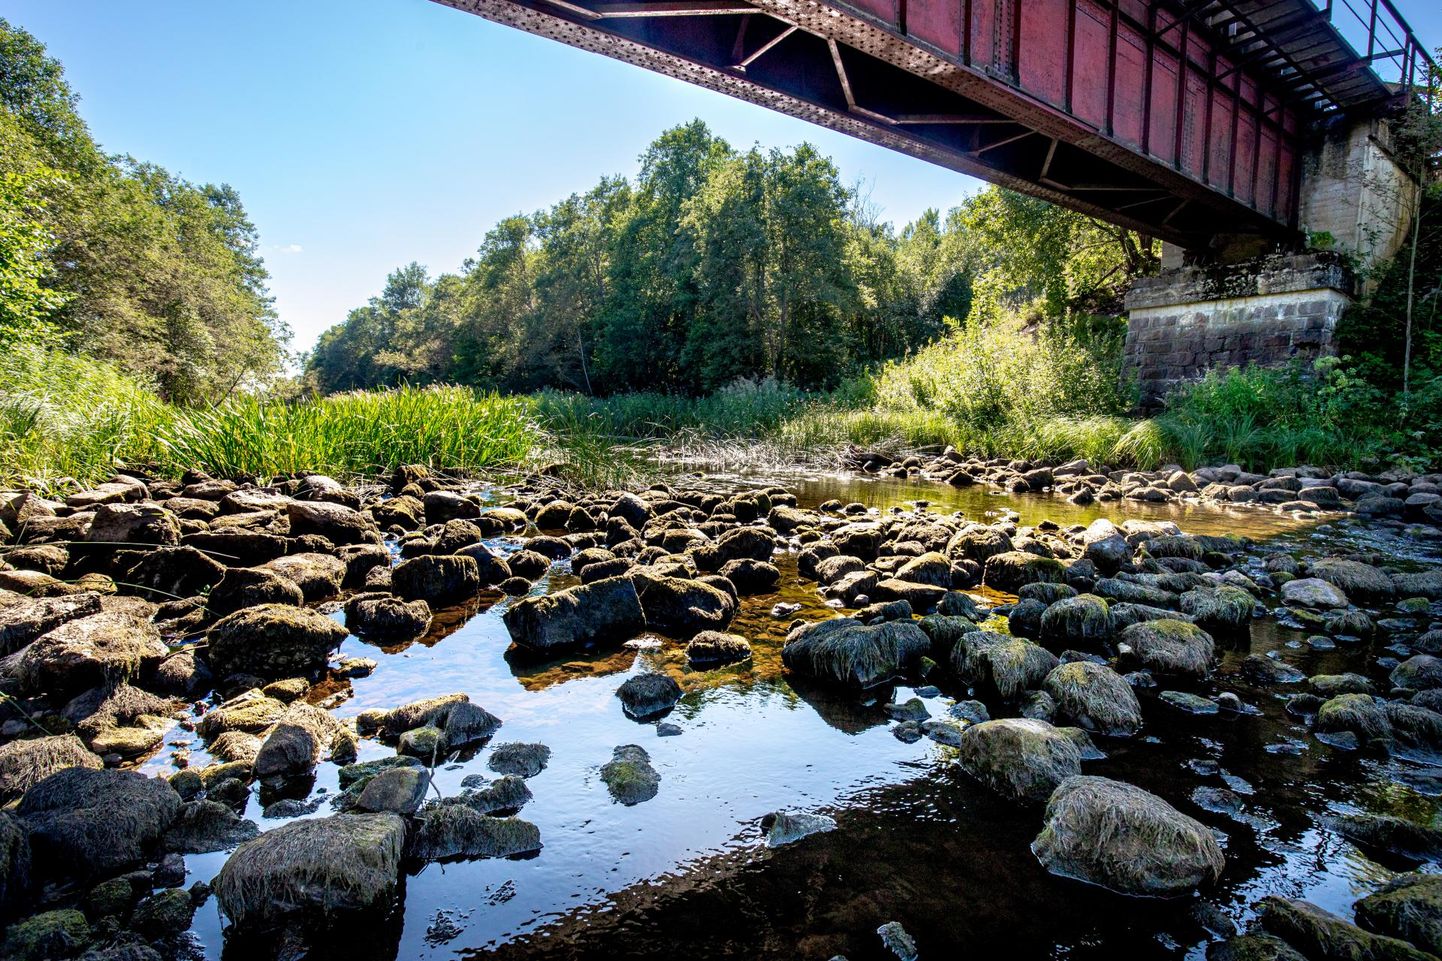 Madal veetase ohustab jõeelustikku. Pilt on tehtud eelmise suve lõpus Reiu jõel Sillaküla raudteesilla juures, kus osa veetaimi oli põua tõttu kuivale jäänud.